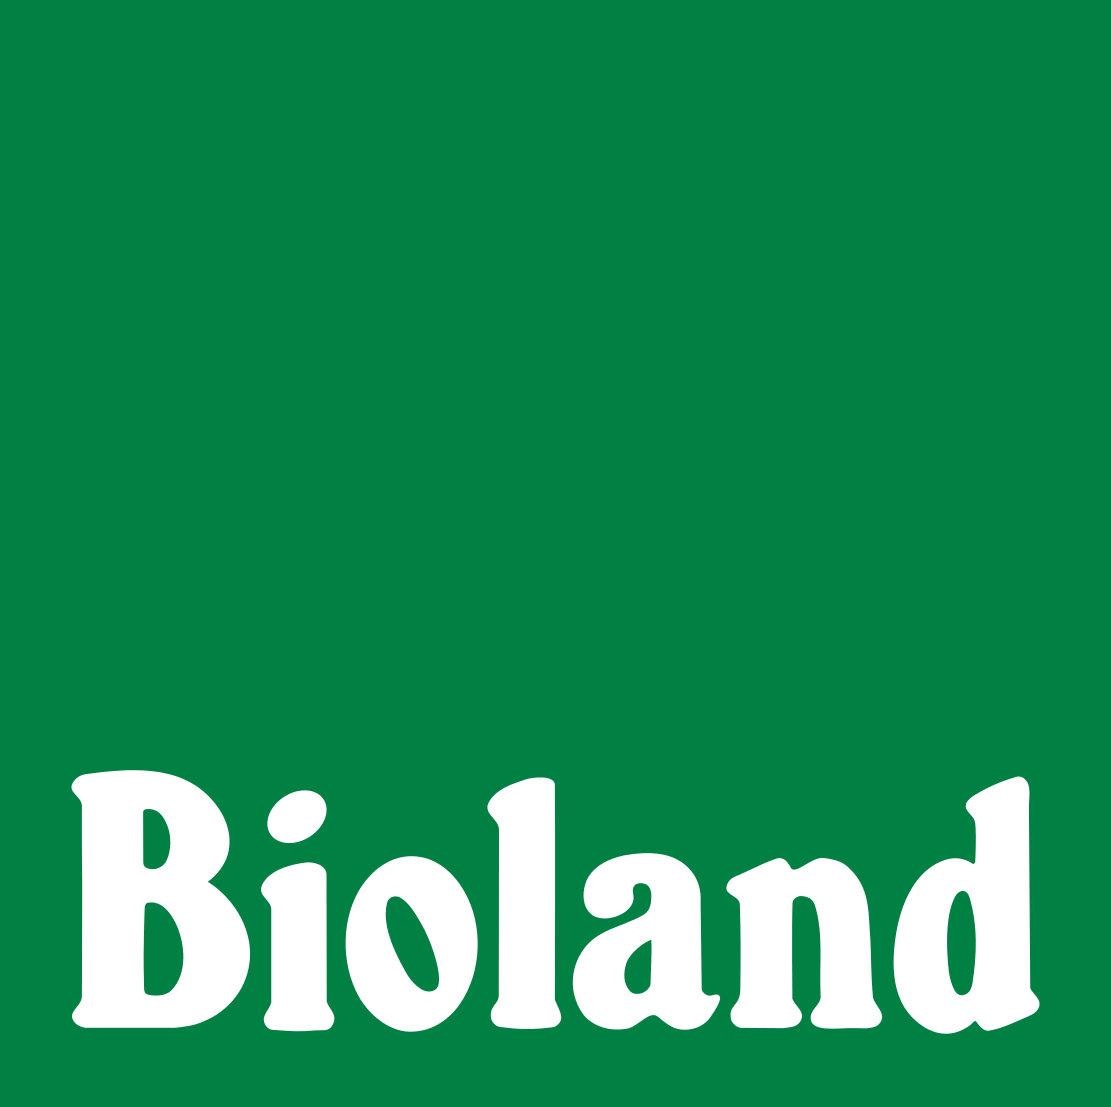 bioland-logo